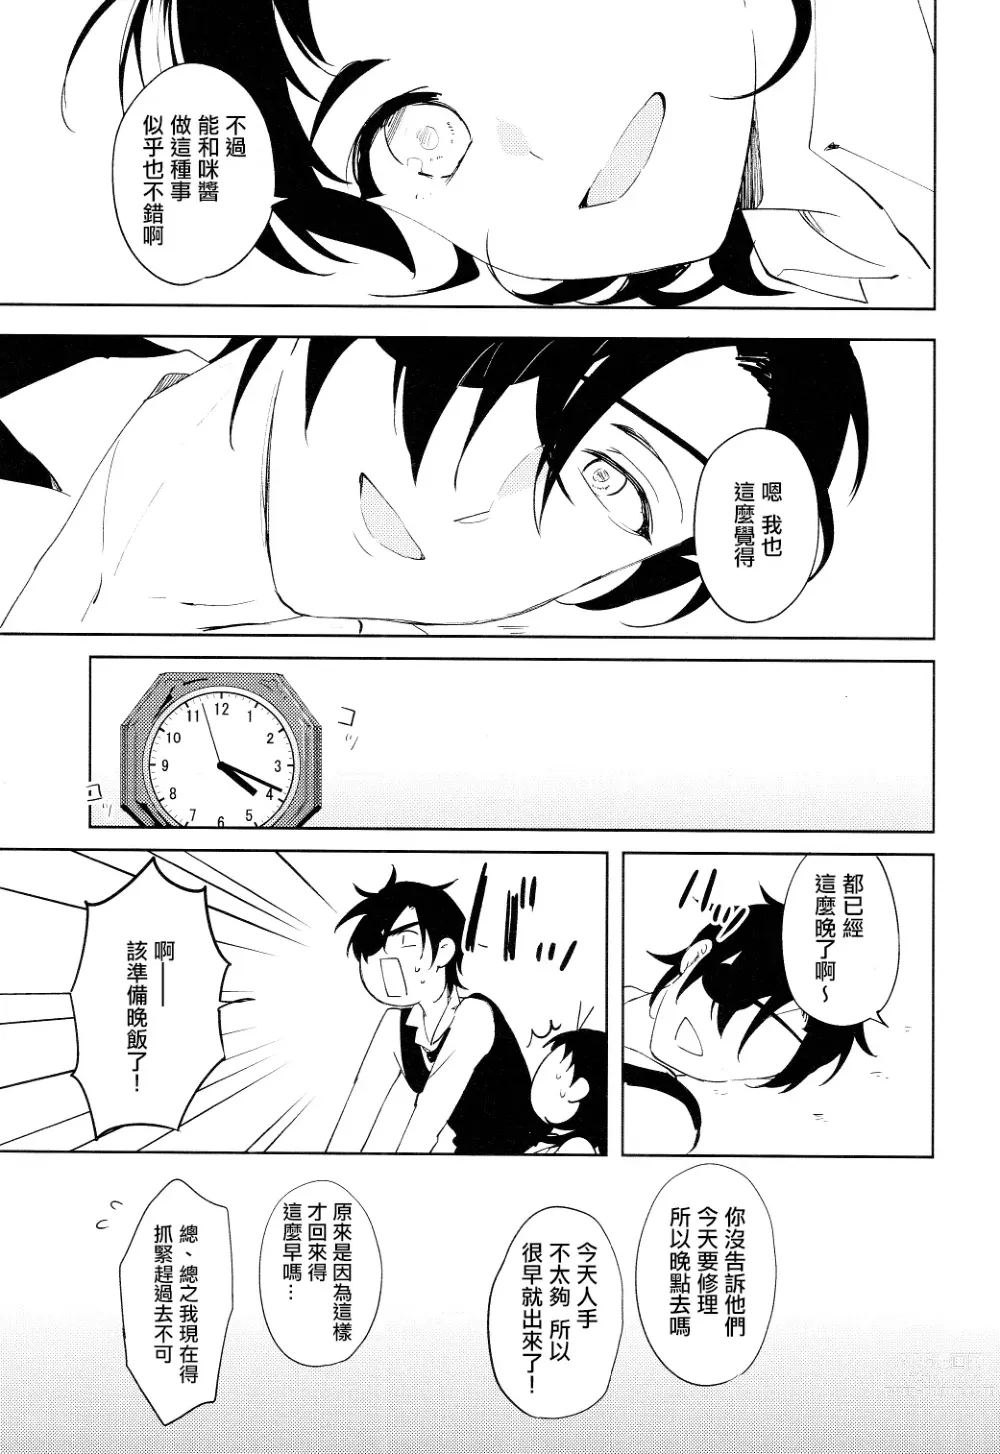 Page 24 of doujinshi 从一个人变成两个人